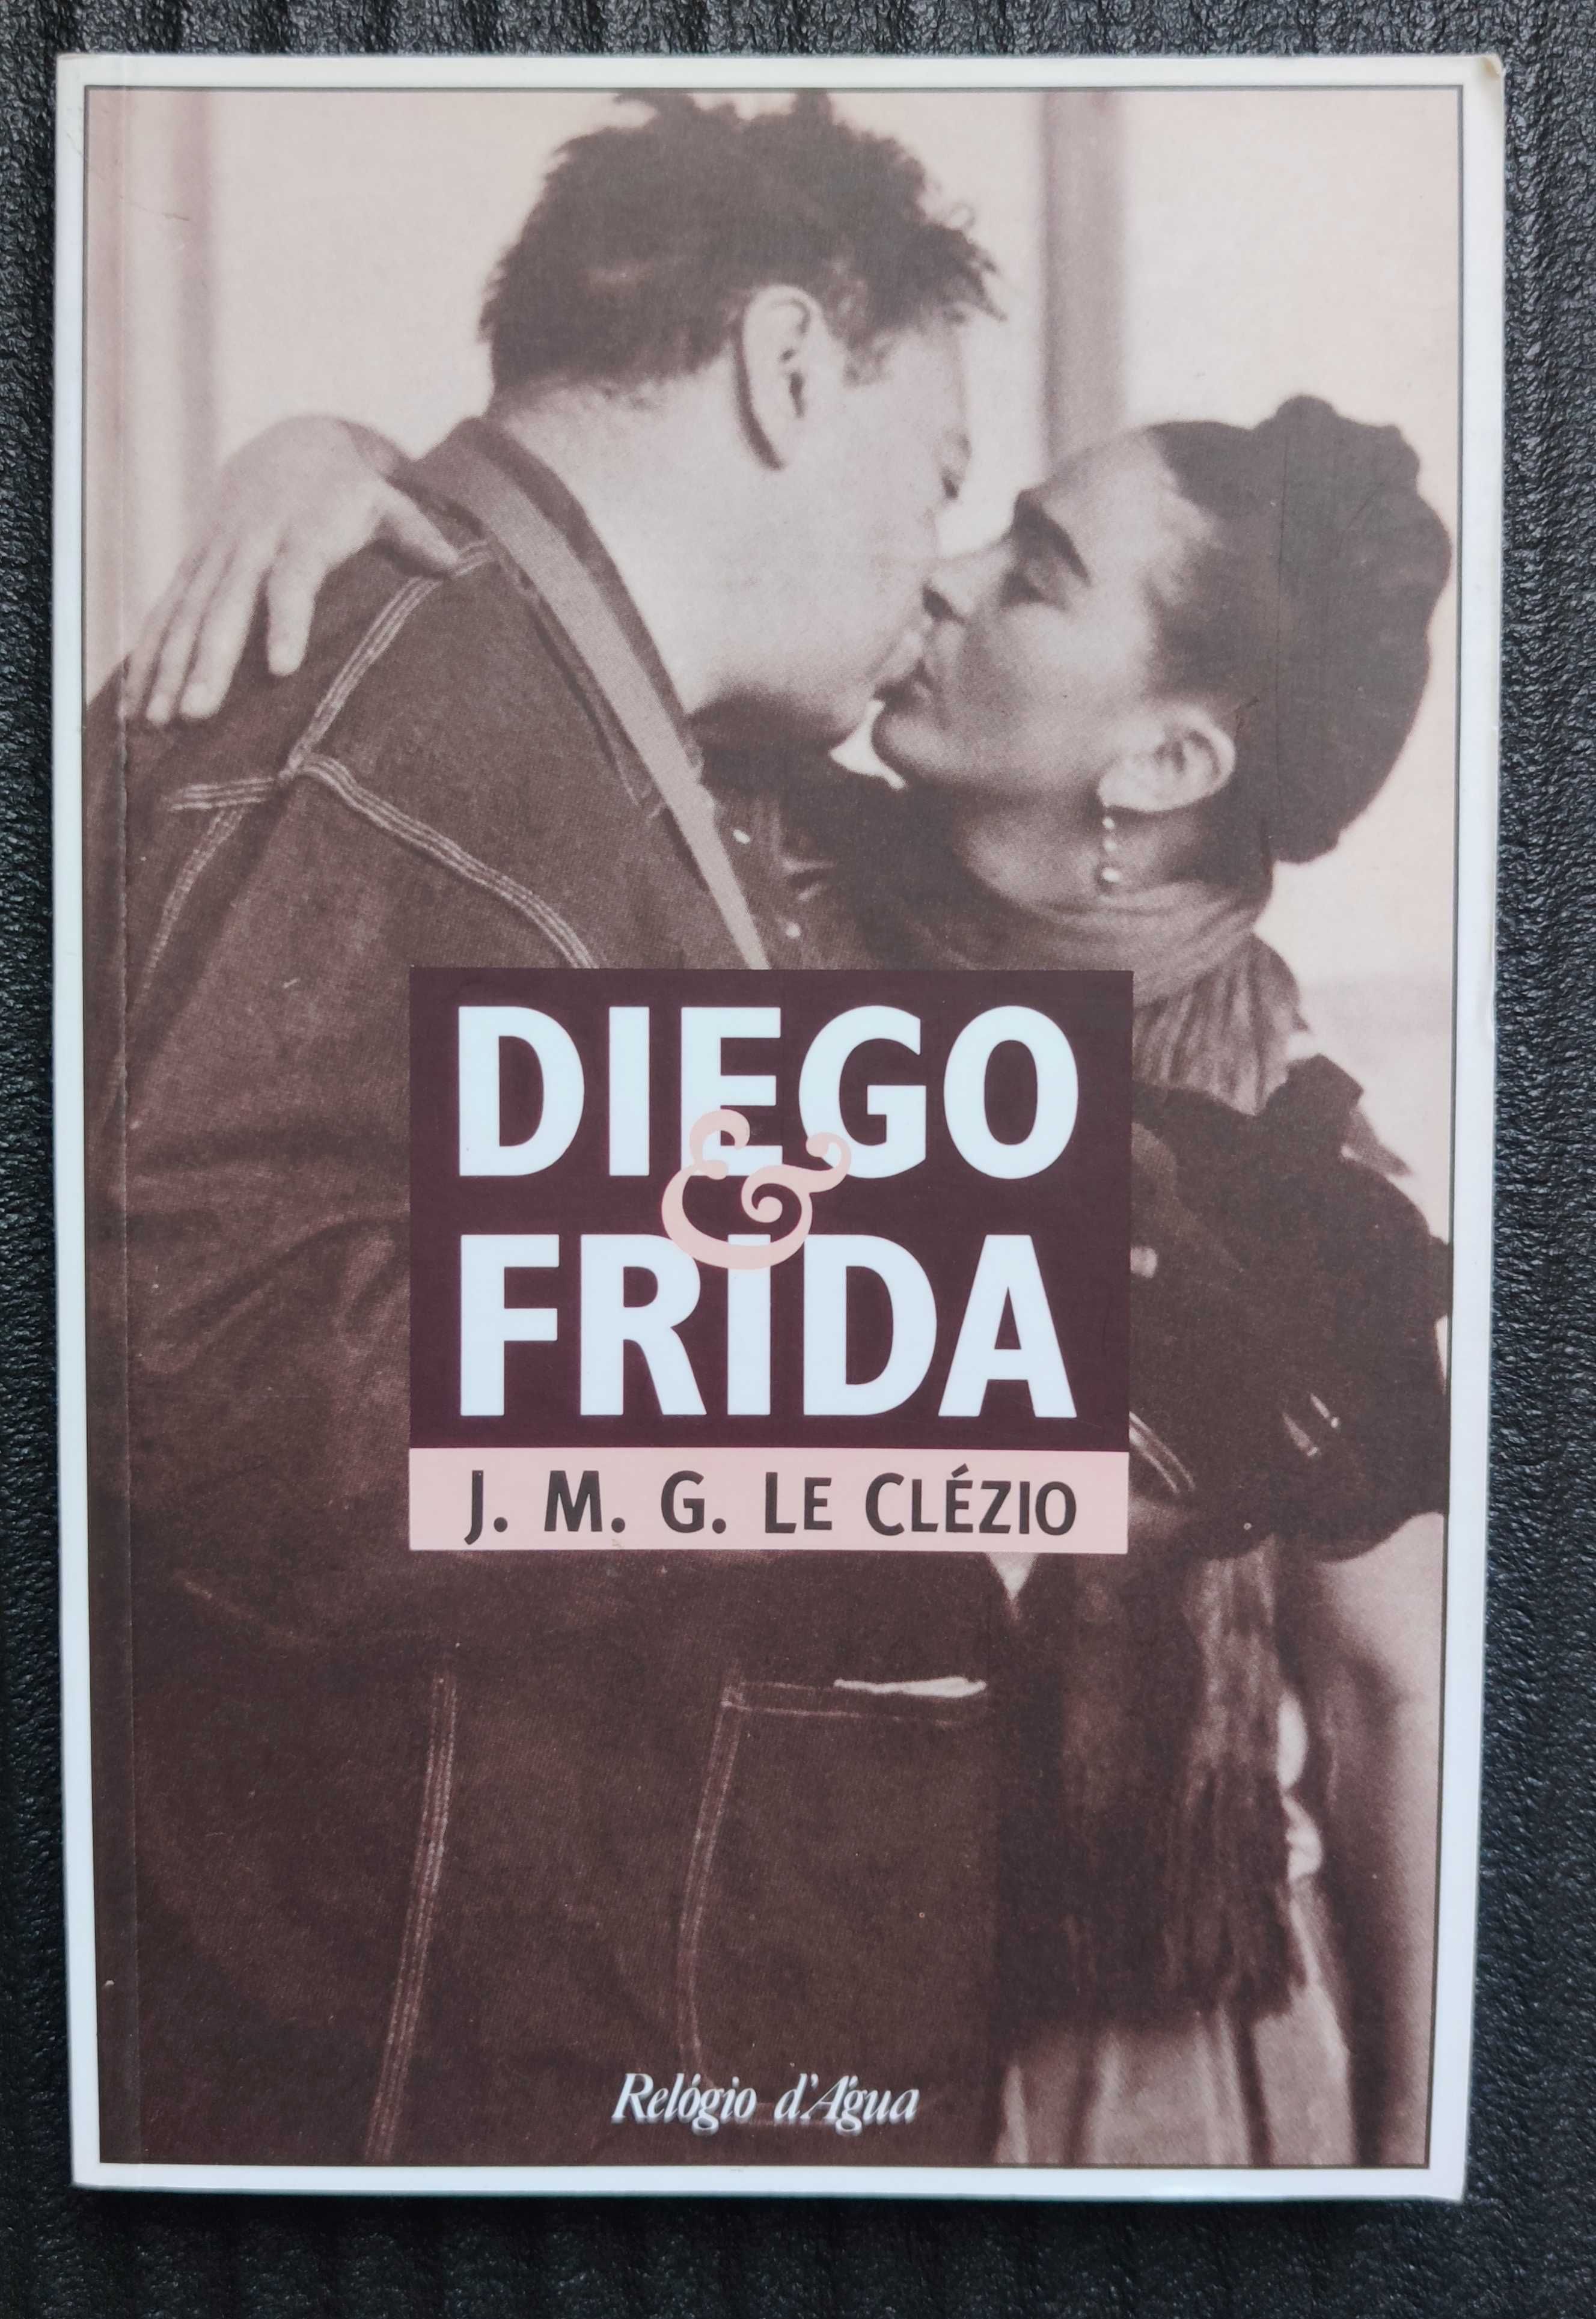 Livro "Diego & Frida" de J. M. G. Le Clézio - raro